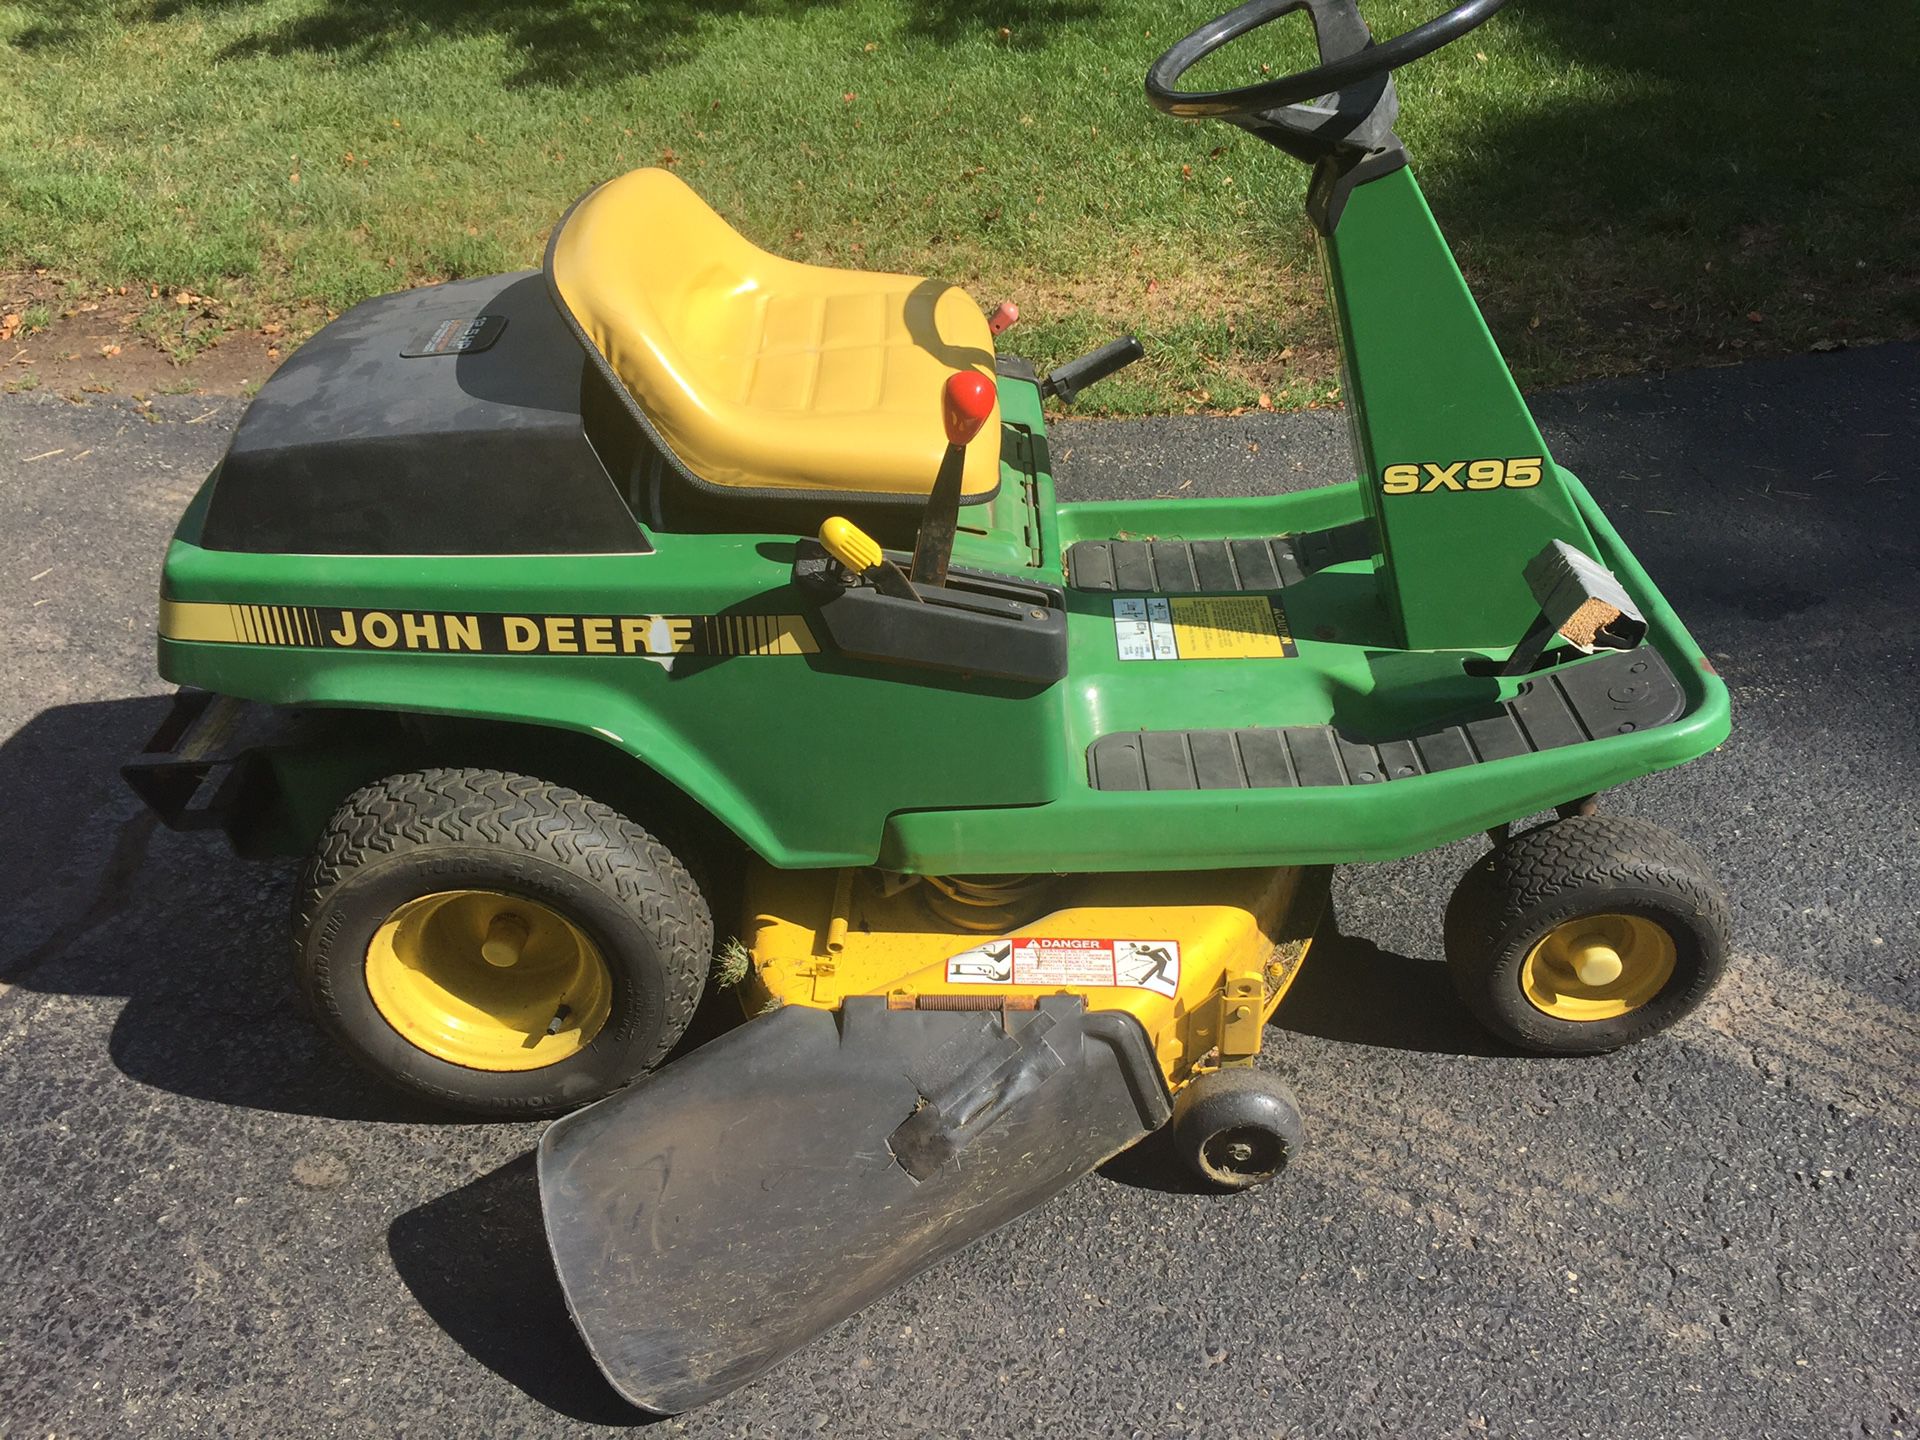 John Deere SX95 tractor